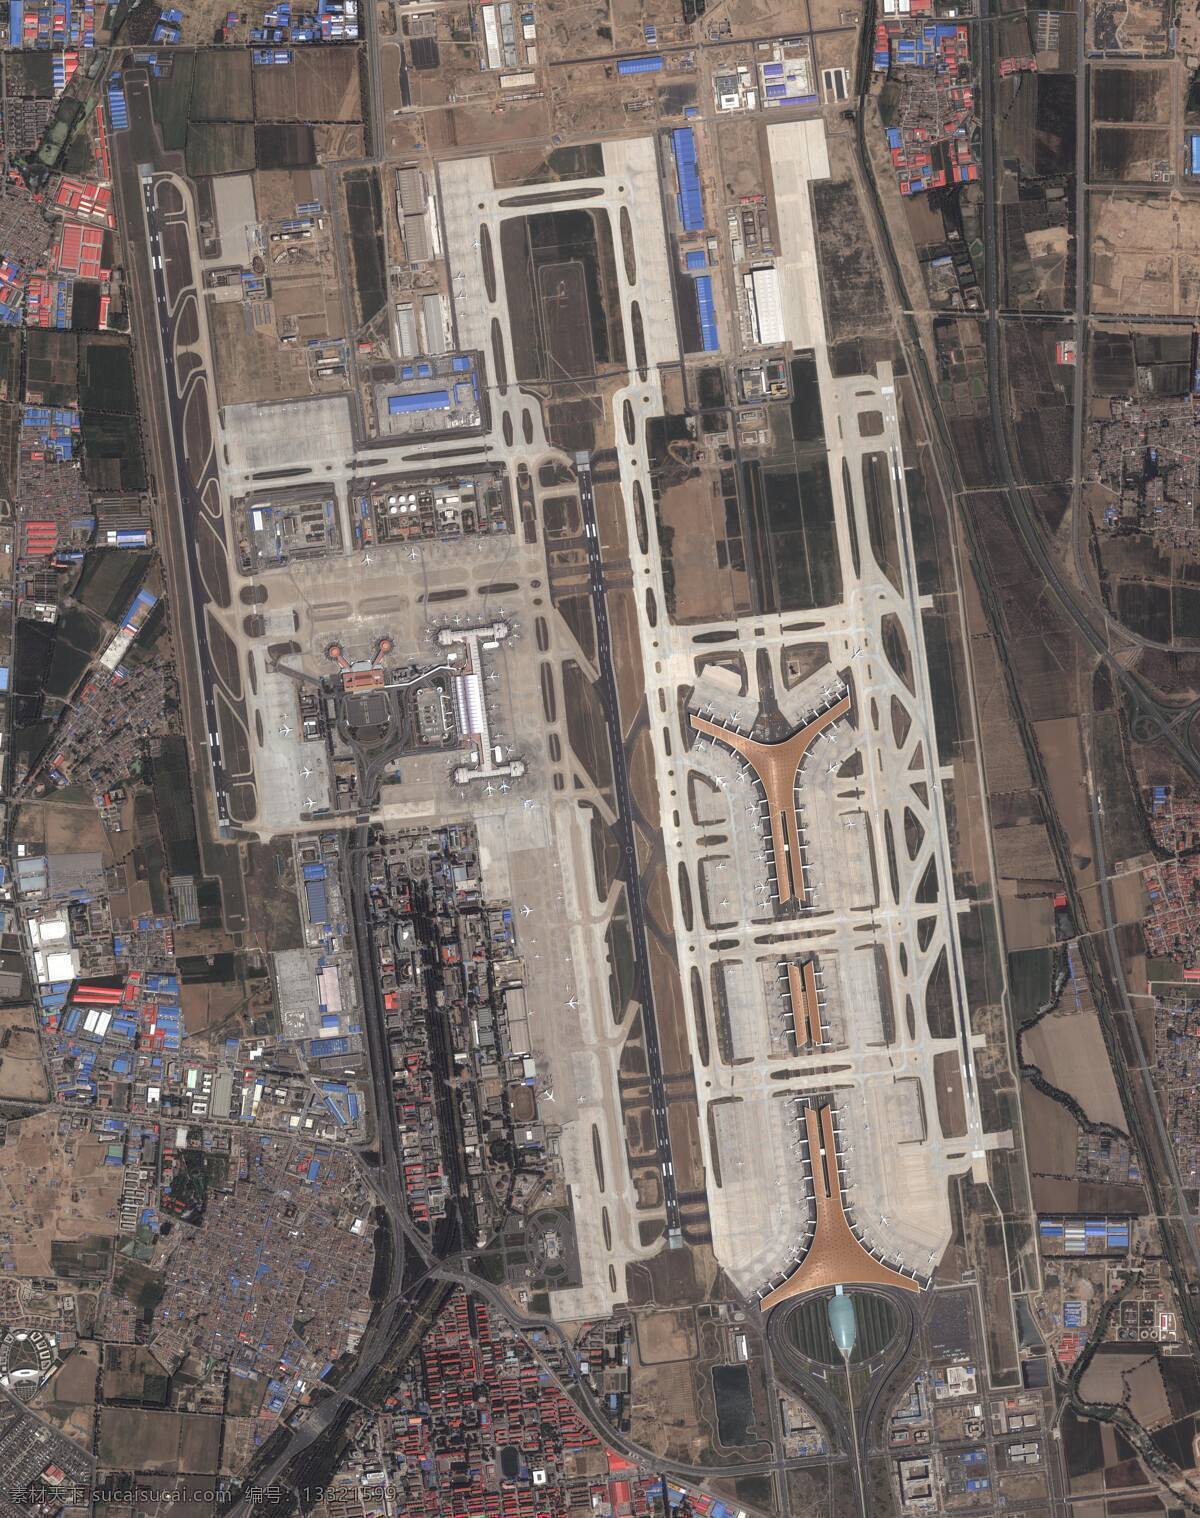 北京 首都国际机场 机场跑道 机场航拍图 机场卫星图 机场全景图 机场航站楼 首都机场 北京机场 3号航站楼 波音747 超 清晰 卫星 照片 军事武器 现代科技